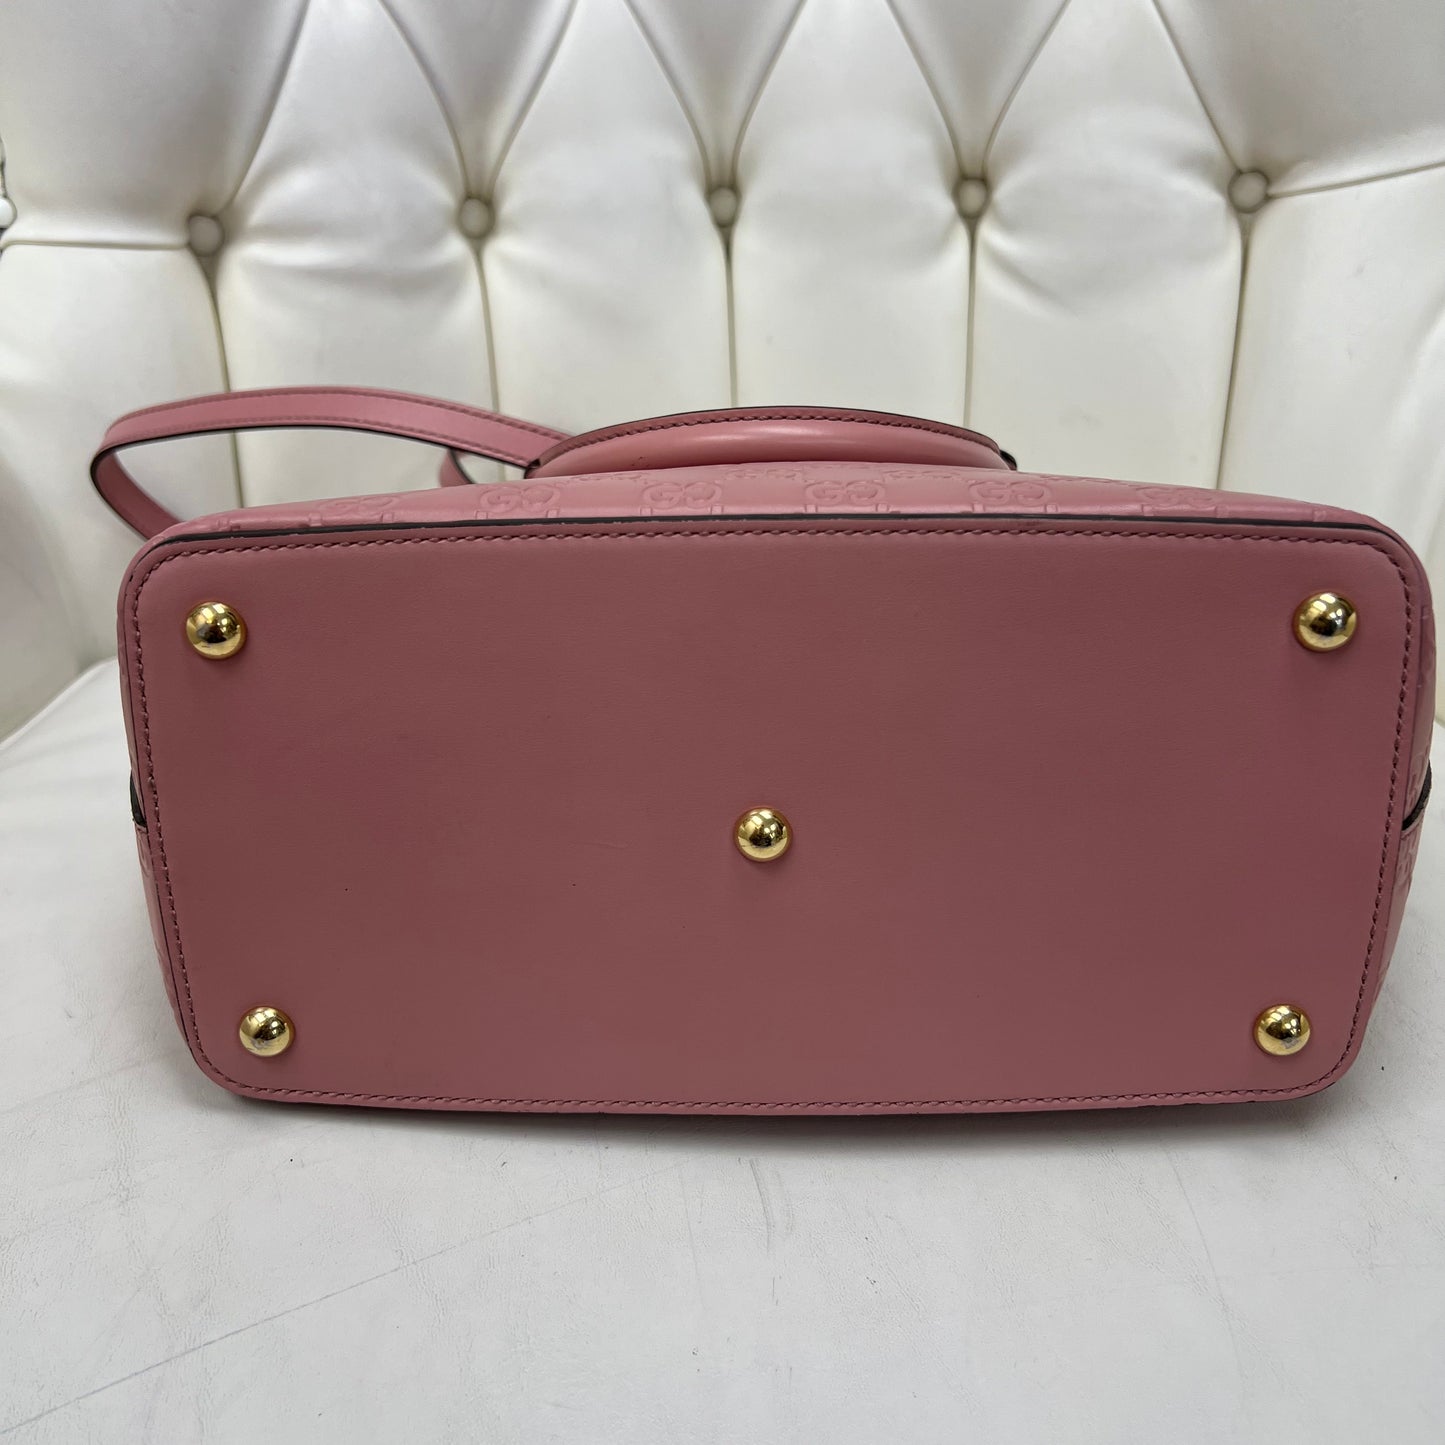 Gucci 2 Way Shoulder Bag Pink Leather